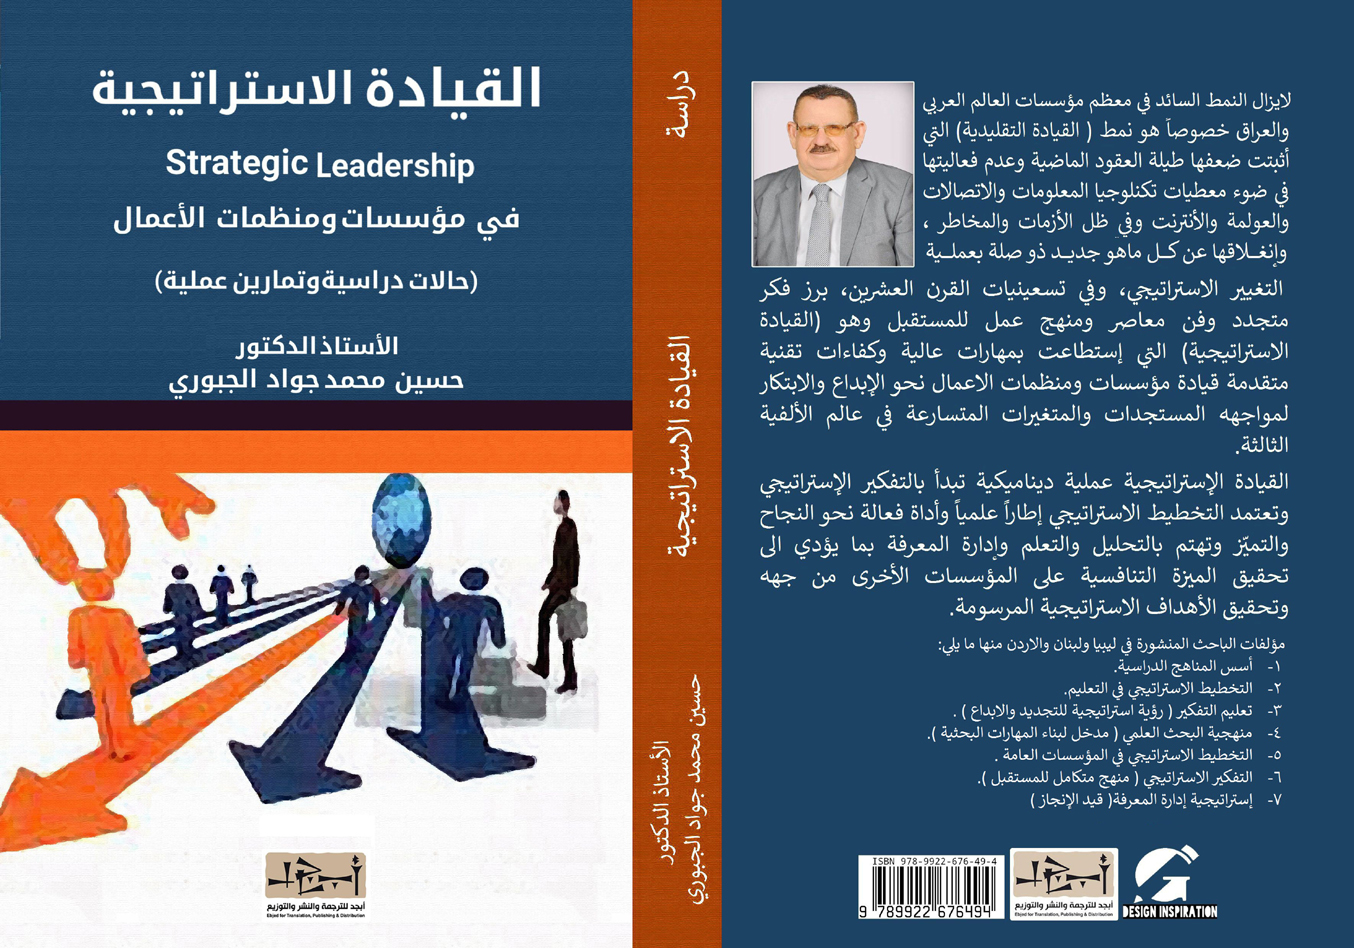 القيادة الاستراتيجية في مؤسسات ومنظمات الأعمال - الدكتور حسين محمد جواد الجبوري 